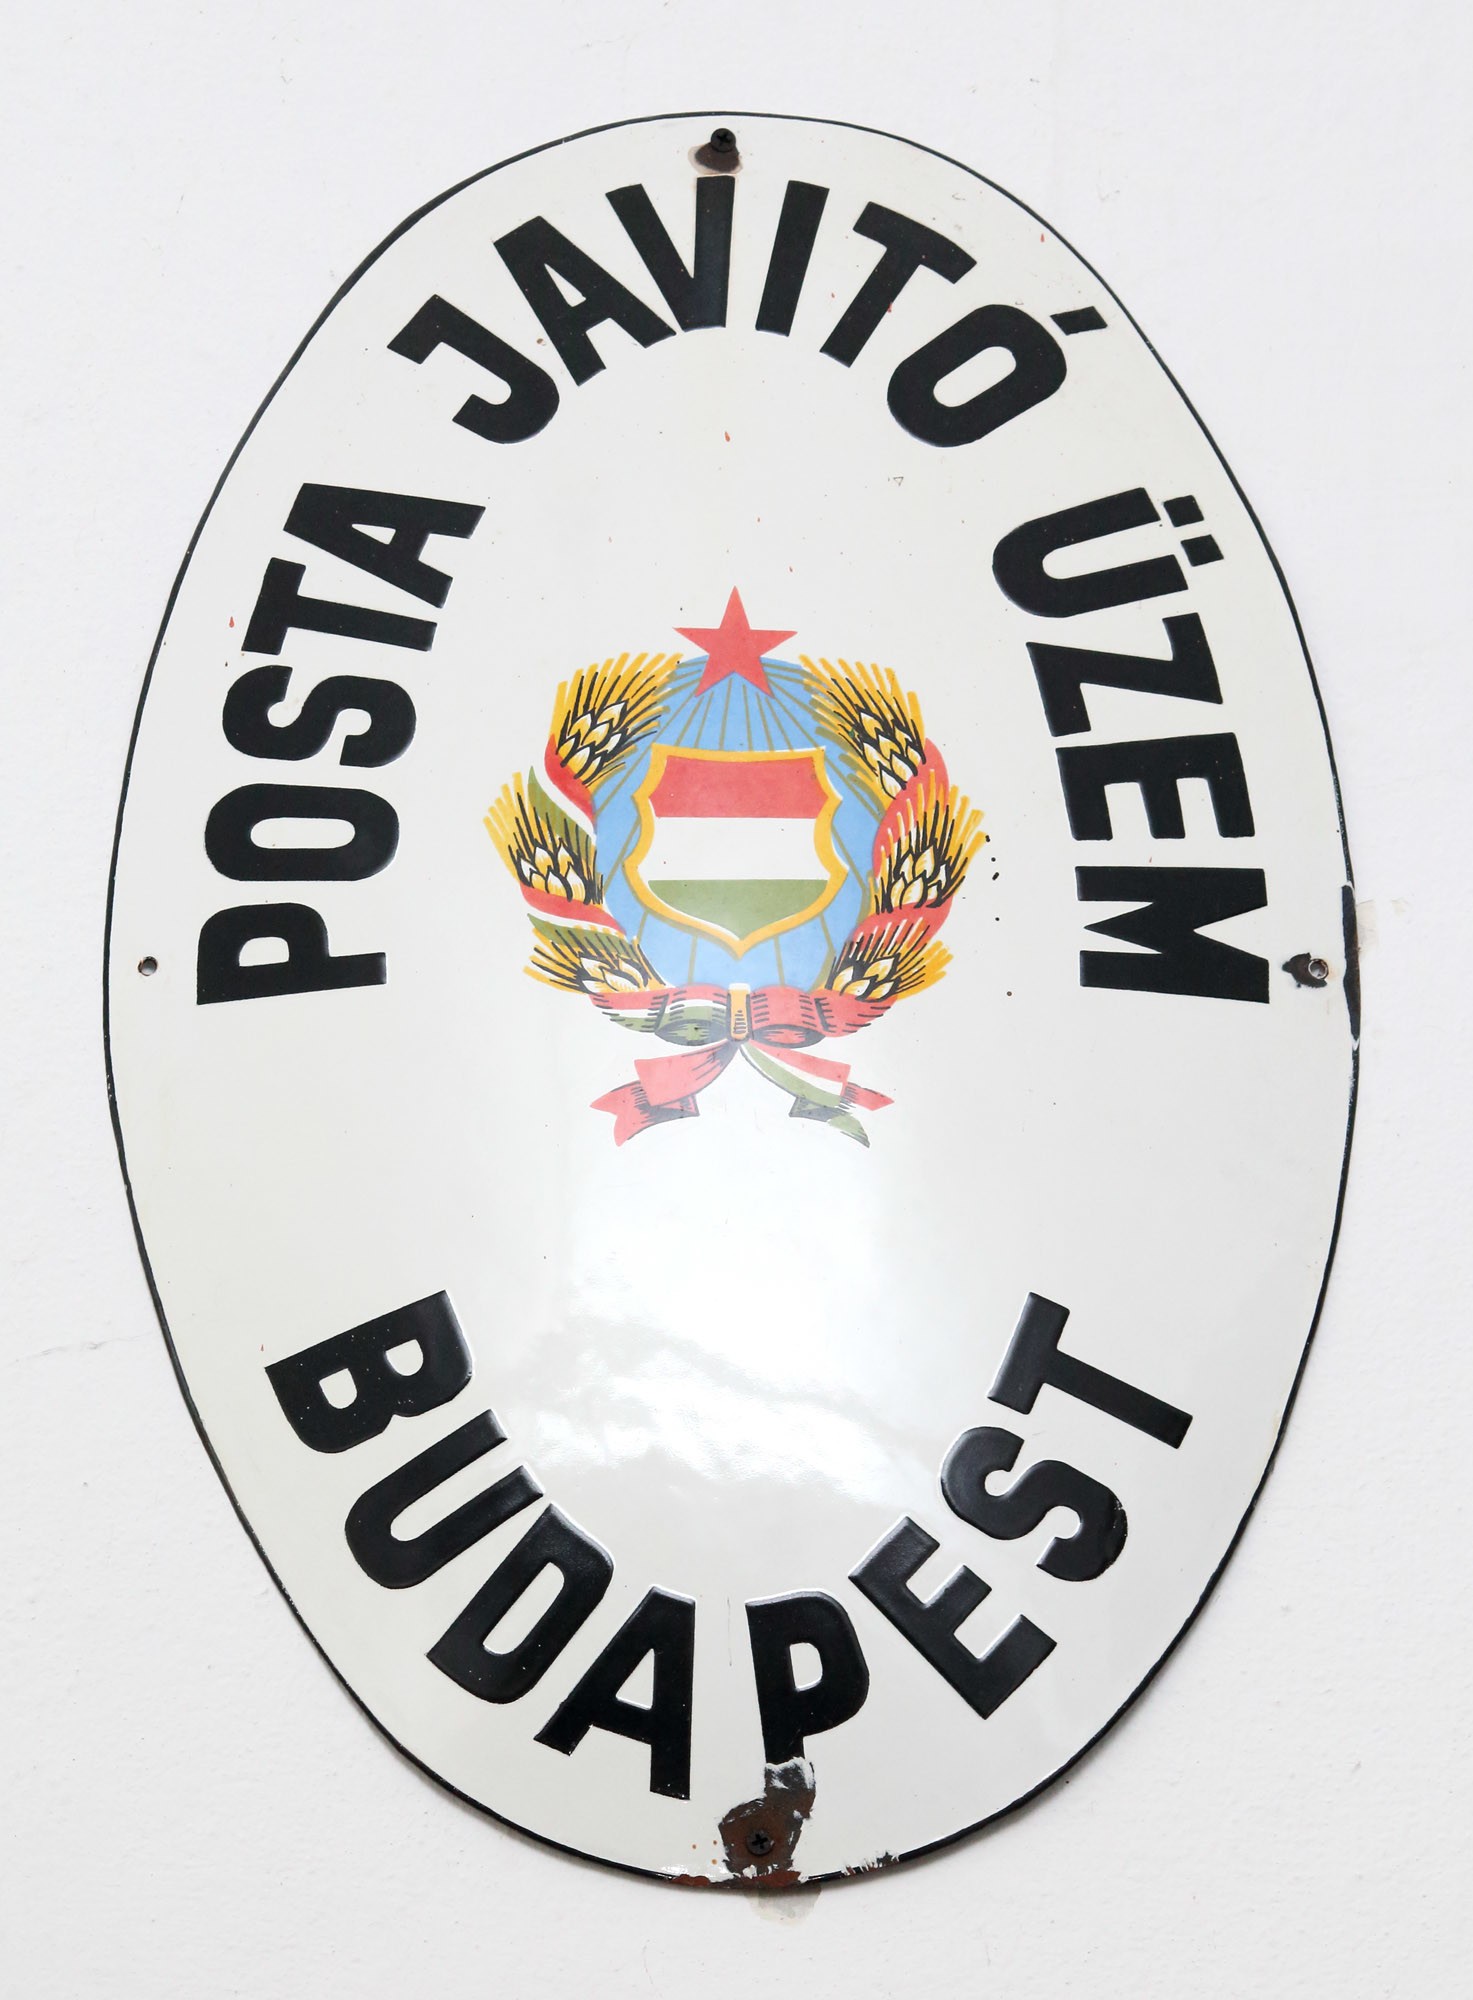 Címertábla „POSTA JAVÍTÓ ÜZEM BUDAPEST” (Postamúzeum CC BY-NC-SA)